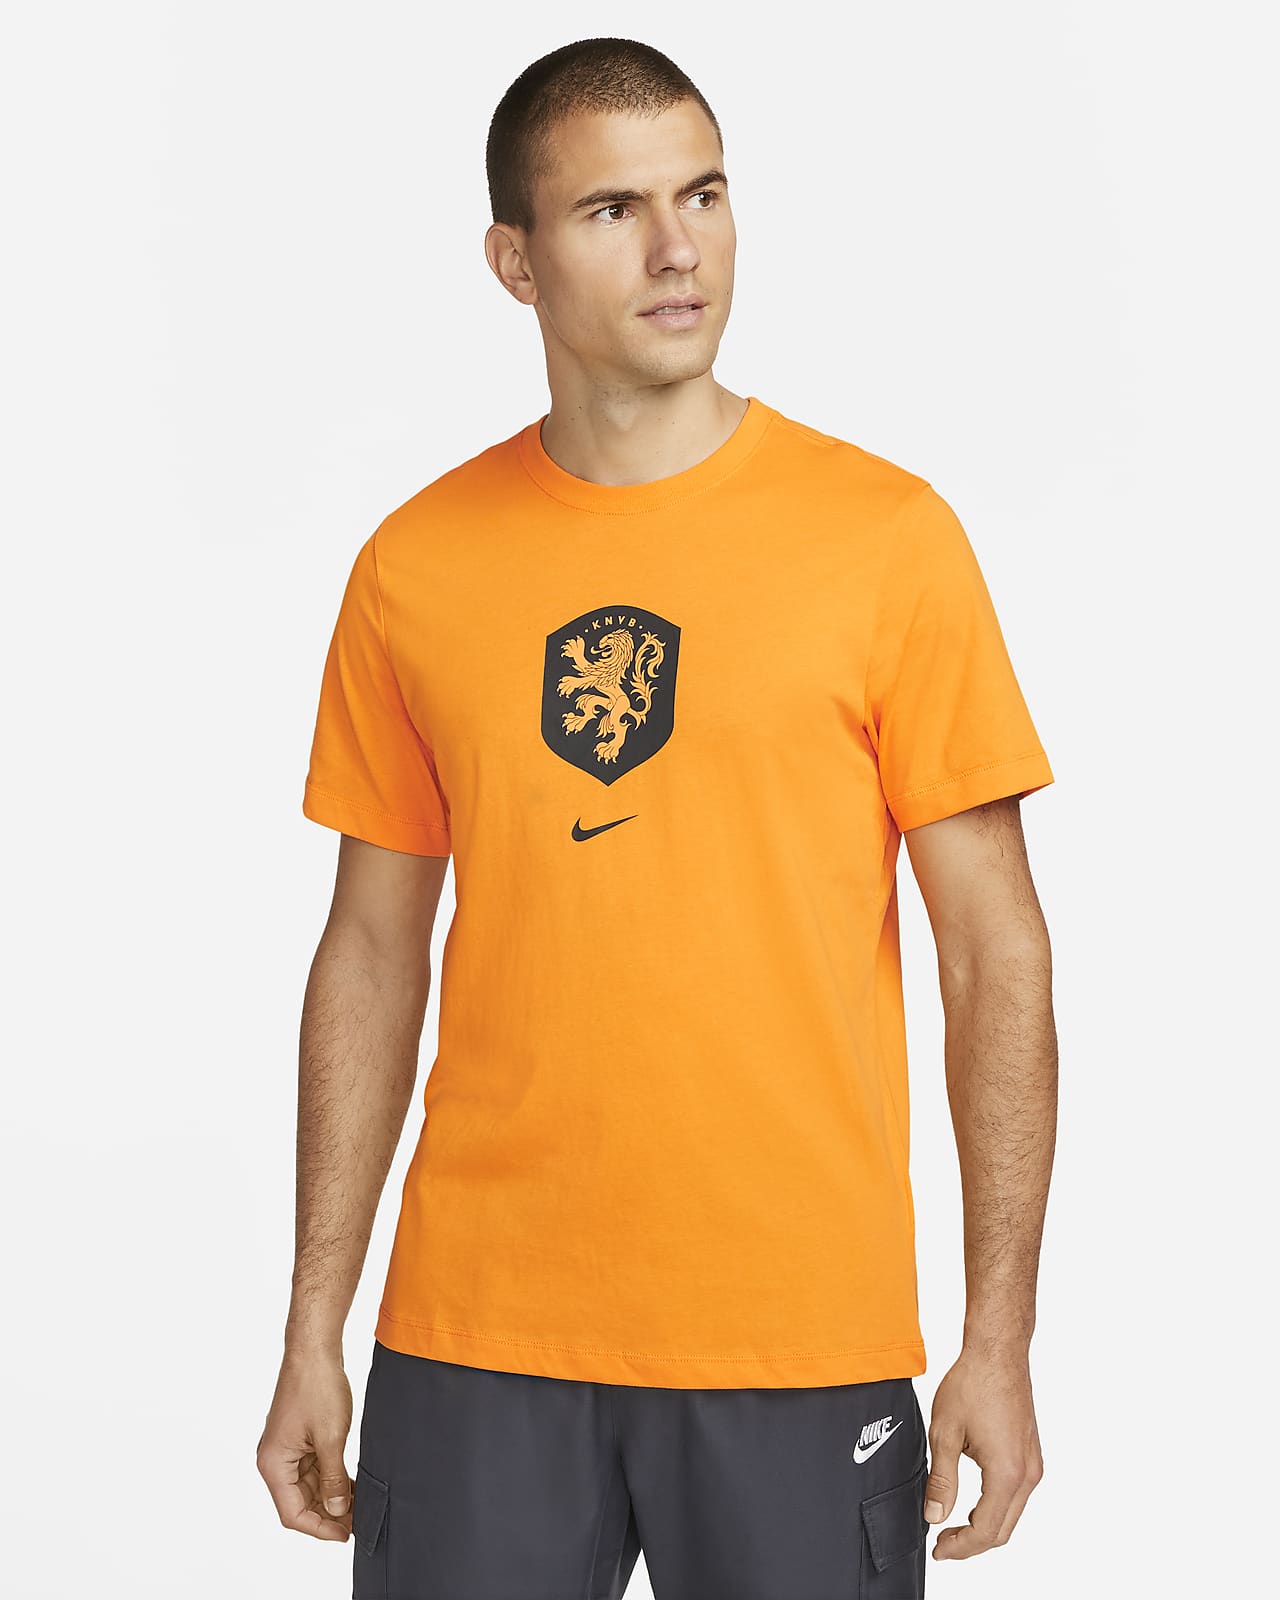 Martin Luther King Junior Åben godtgørelse Holland Nike-T-shirt til mænd. Nike DK